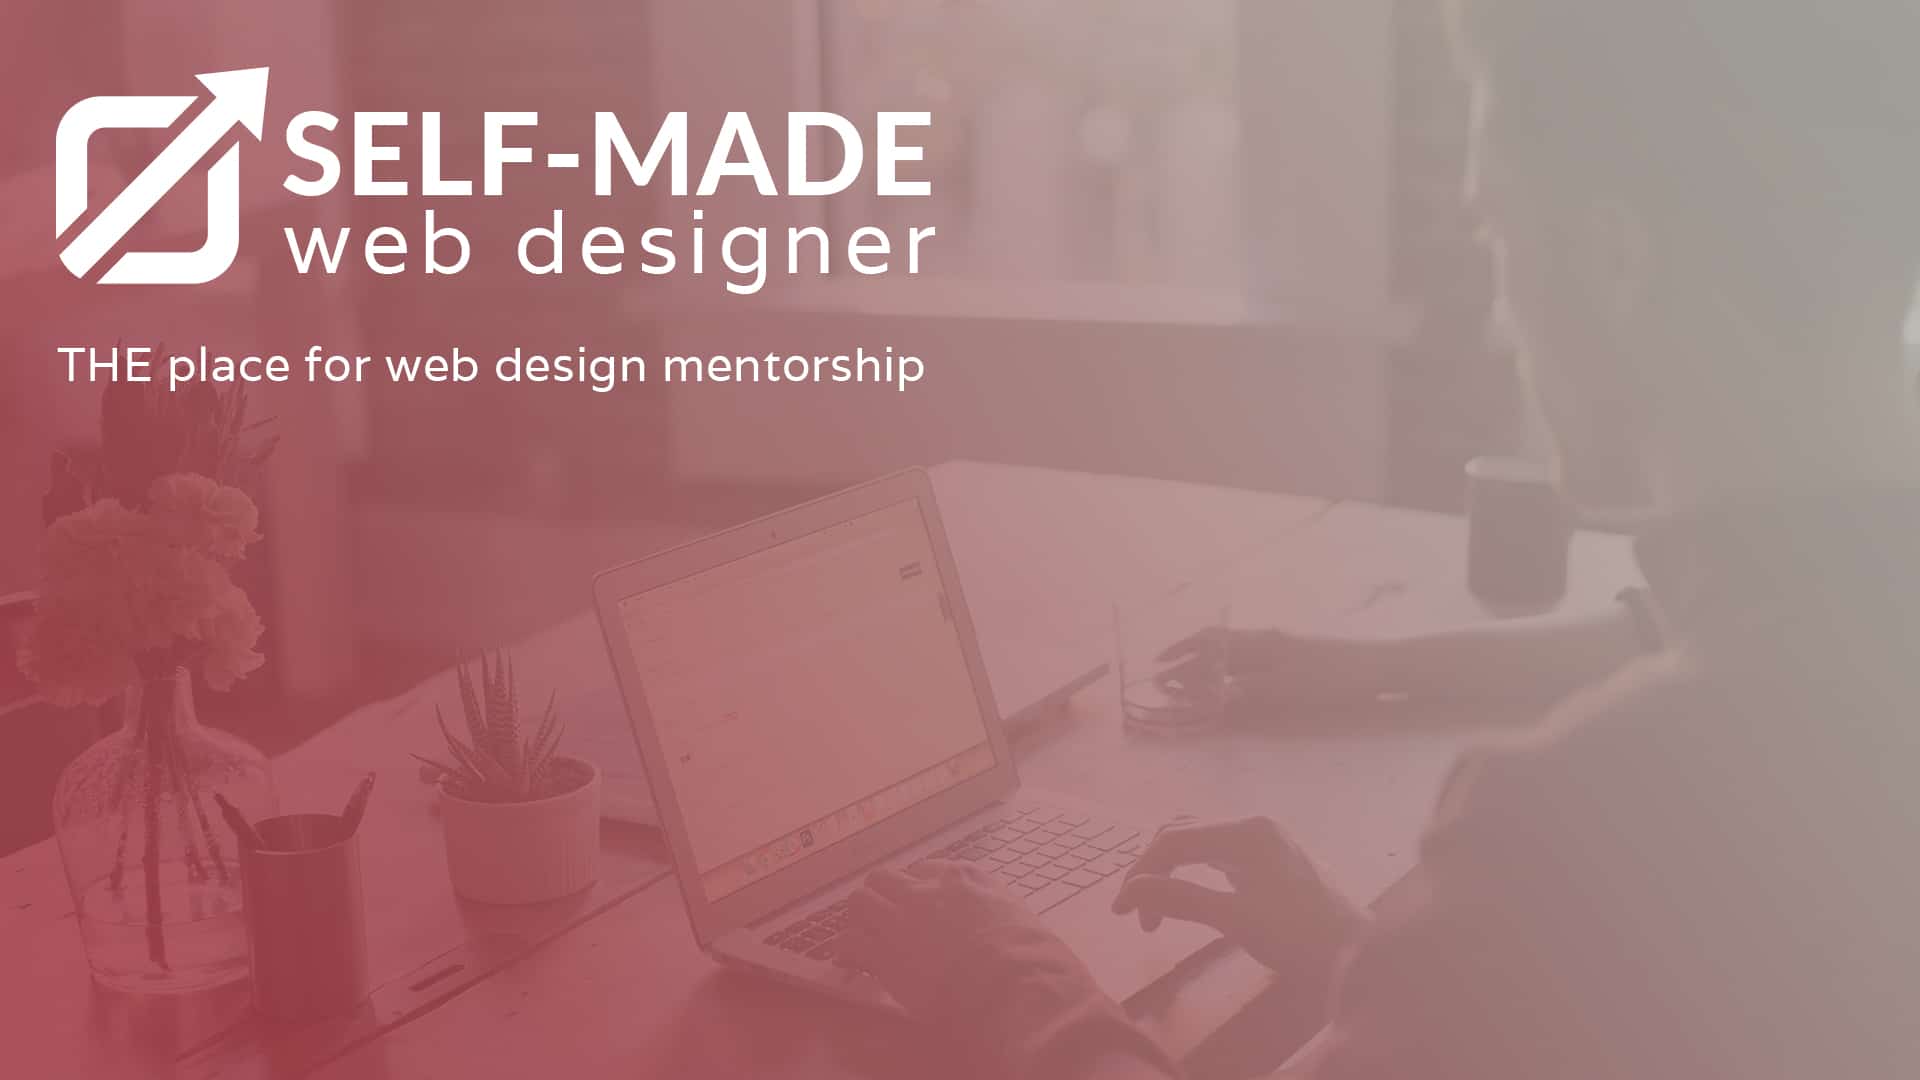 (c) Selfmadewebdesigner.com